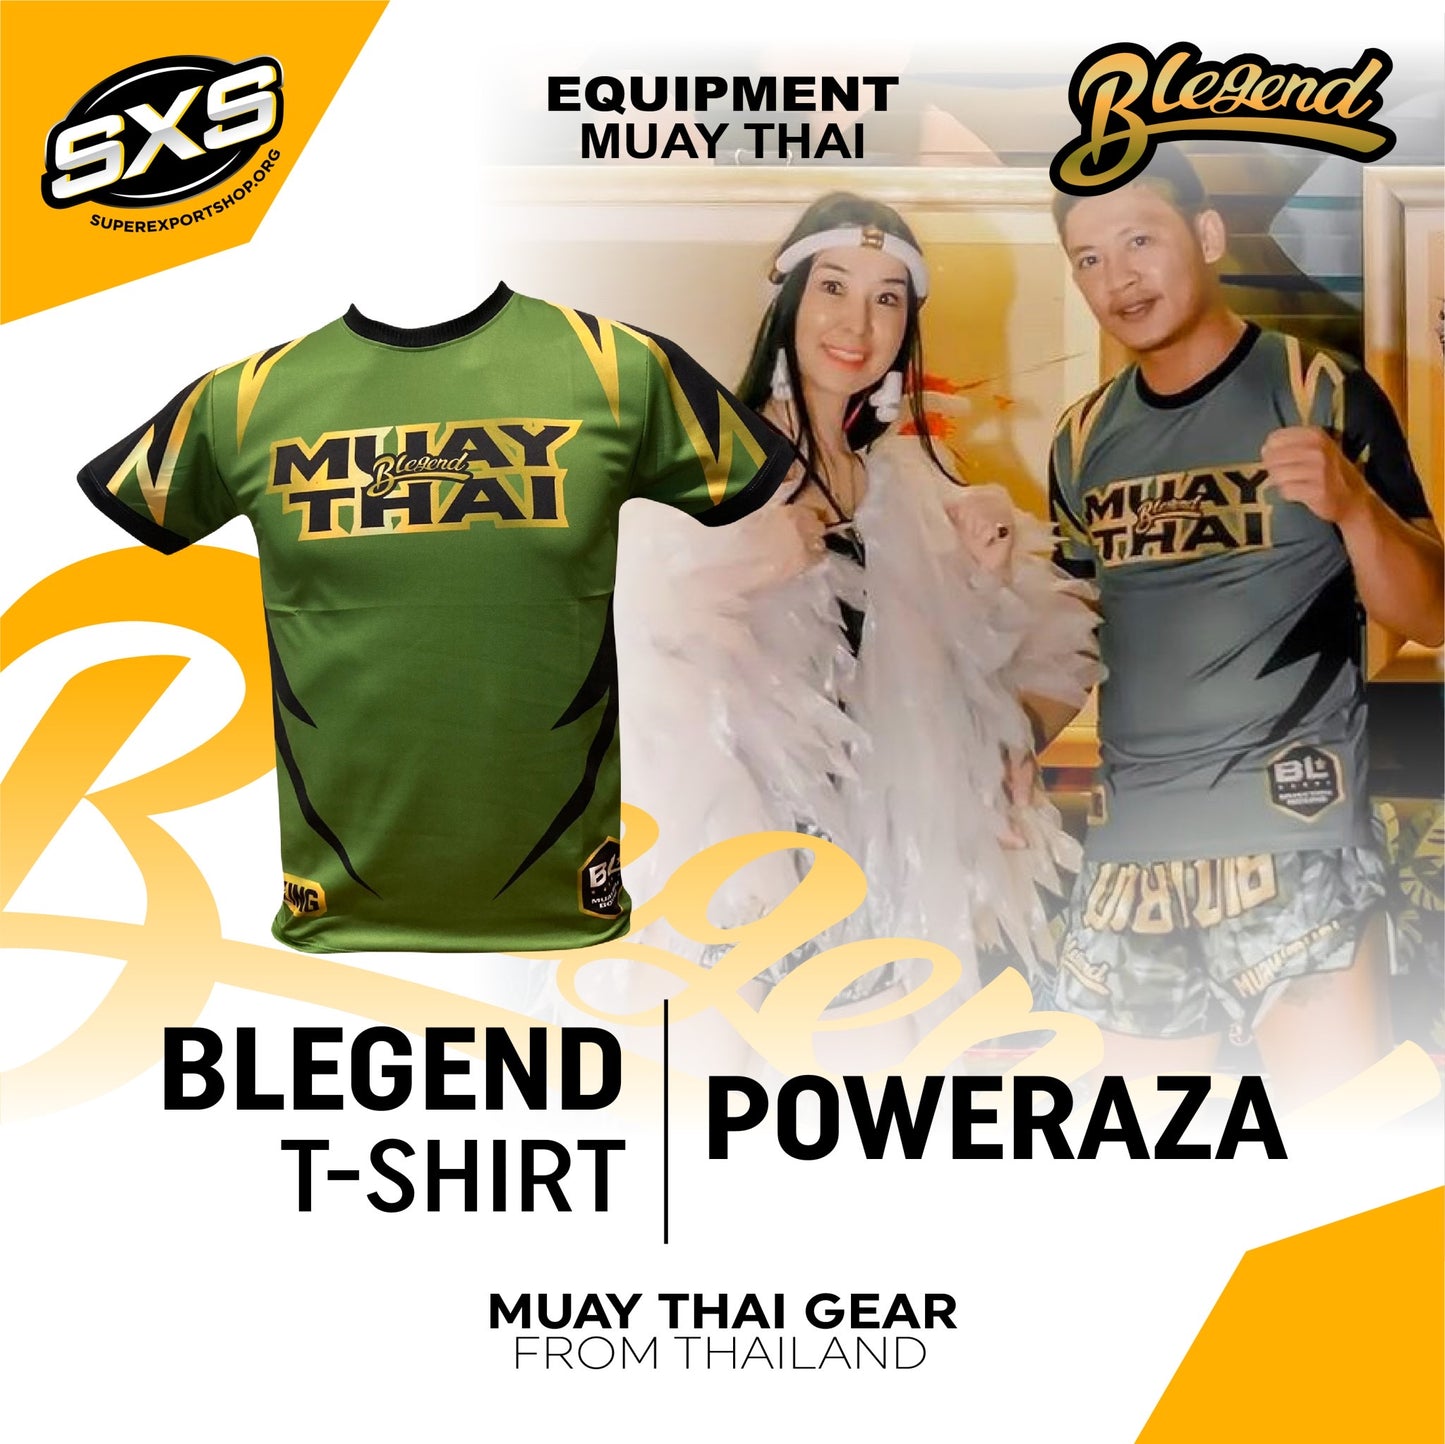 Blegend T-shirt Poweraza